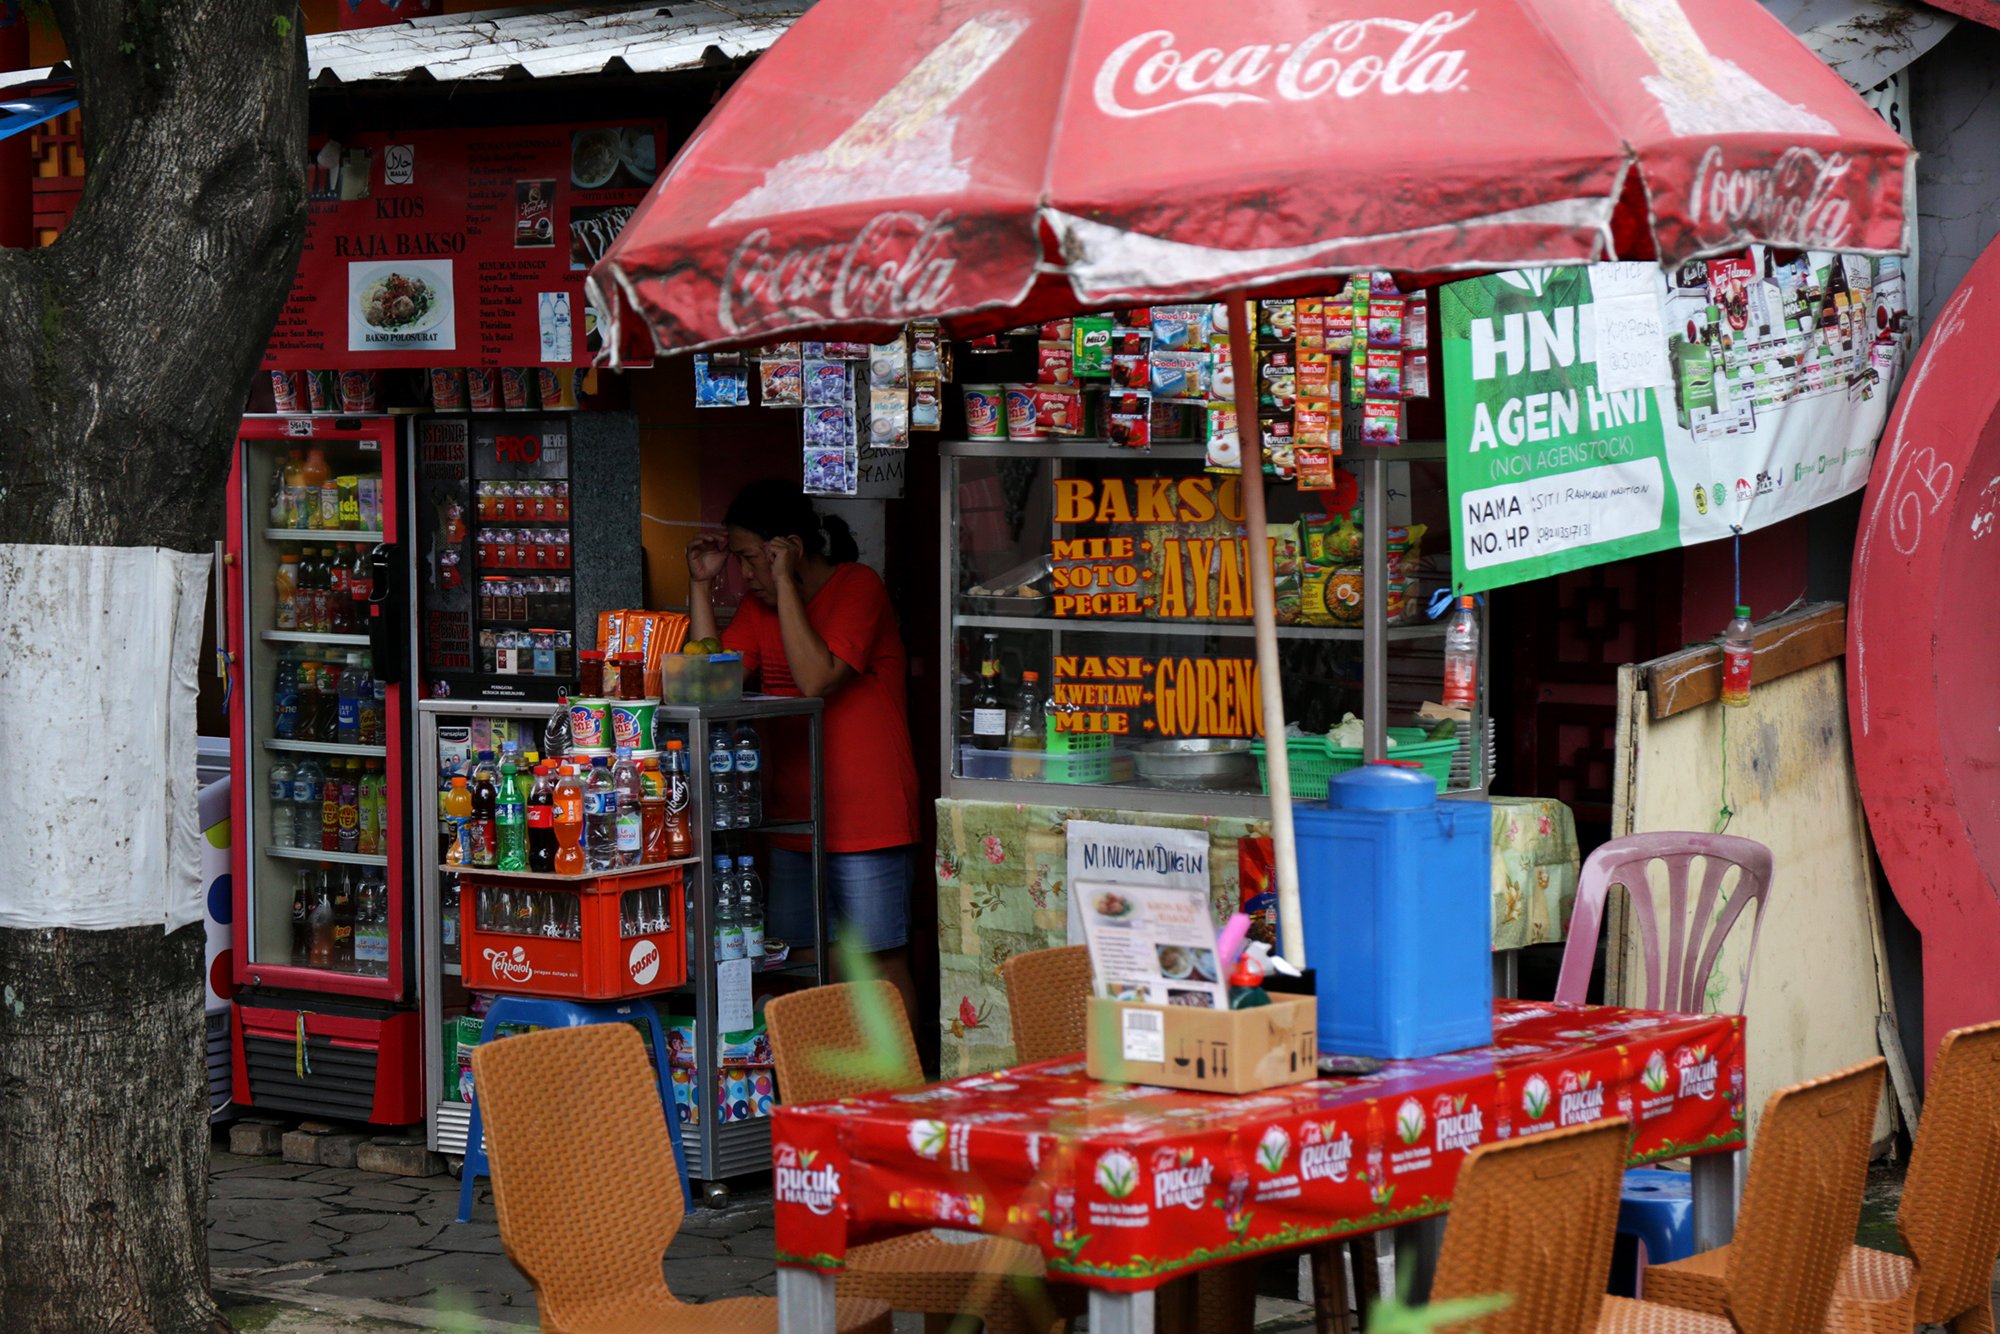 Seorang penjual menunggu kehadiran pembeli di kawasan Kampung China, Kota Wisata, Cilengsi, Jawa Barat (28/1).